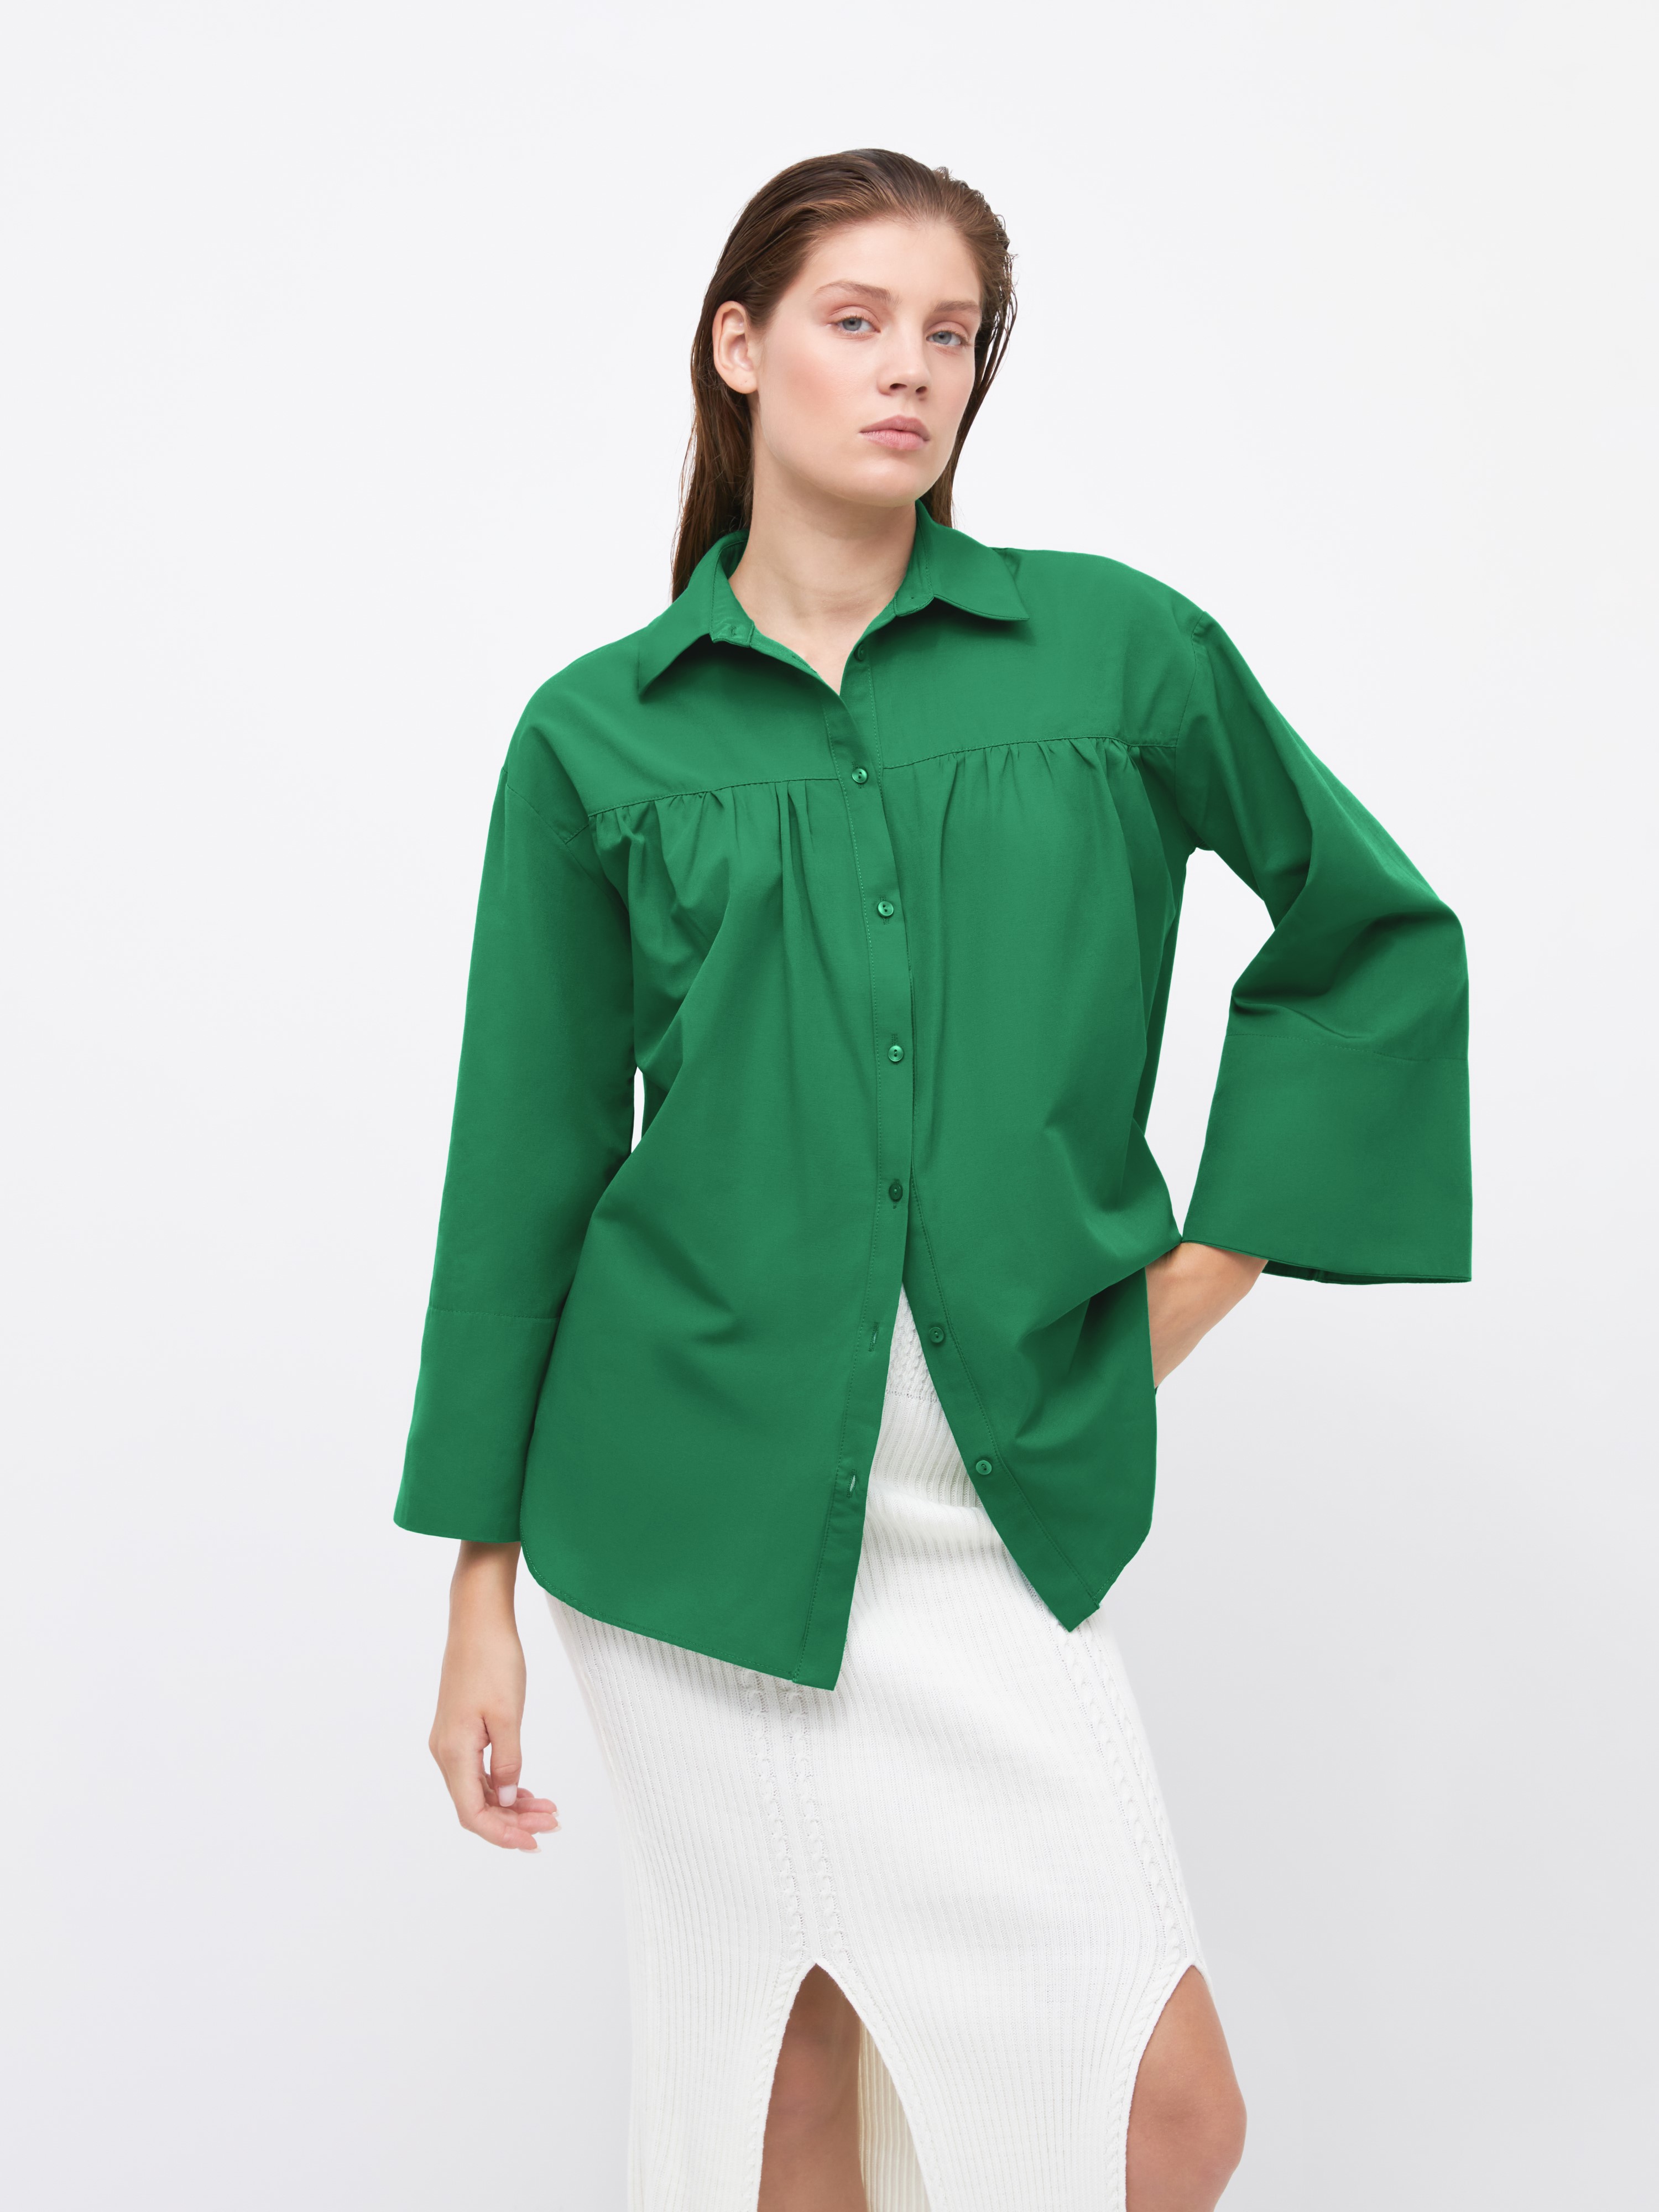 Рубашка женская Arive ARV-WS-10521-008 зелёная, размер XL